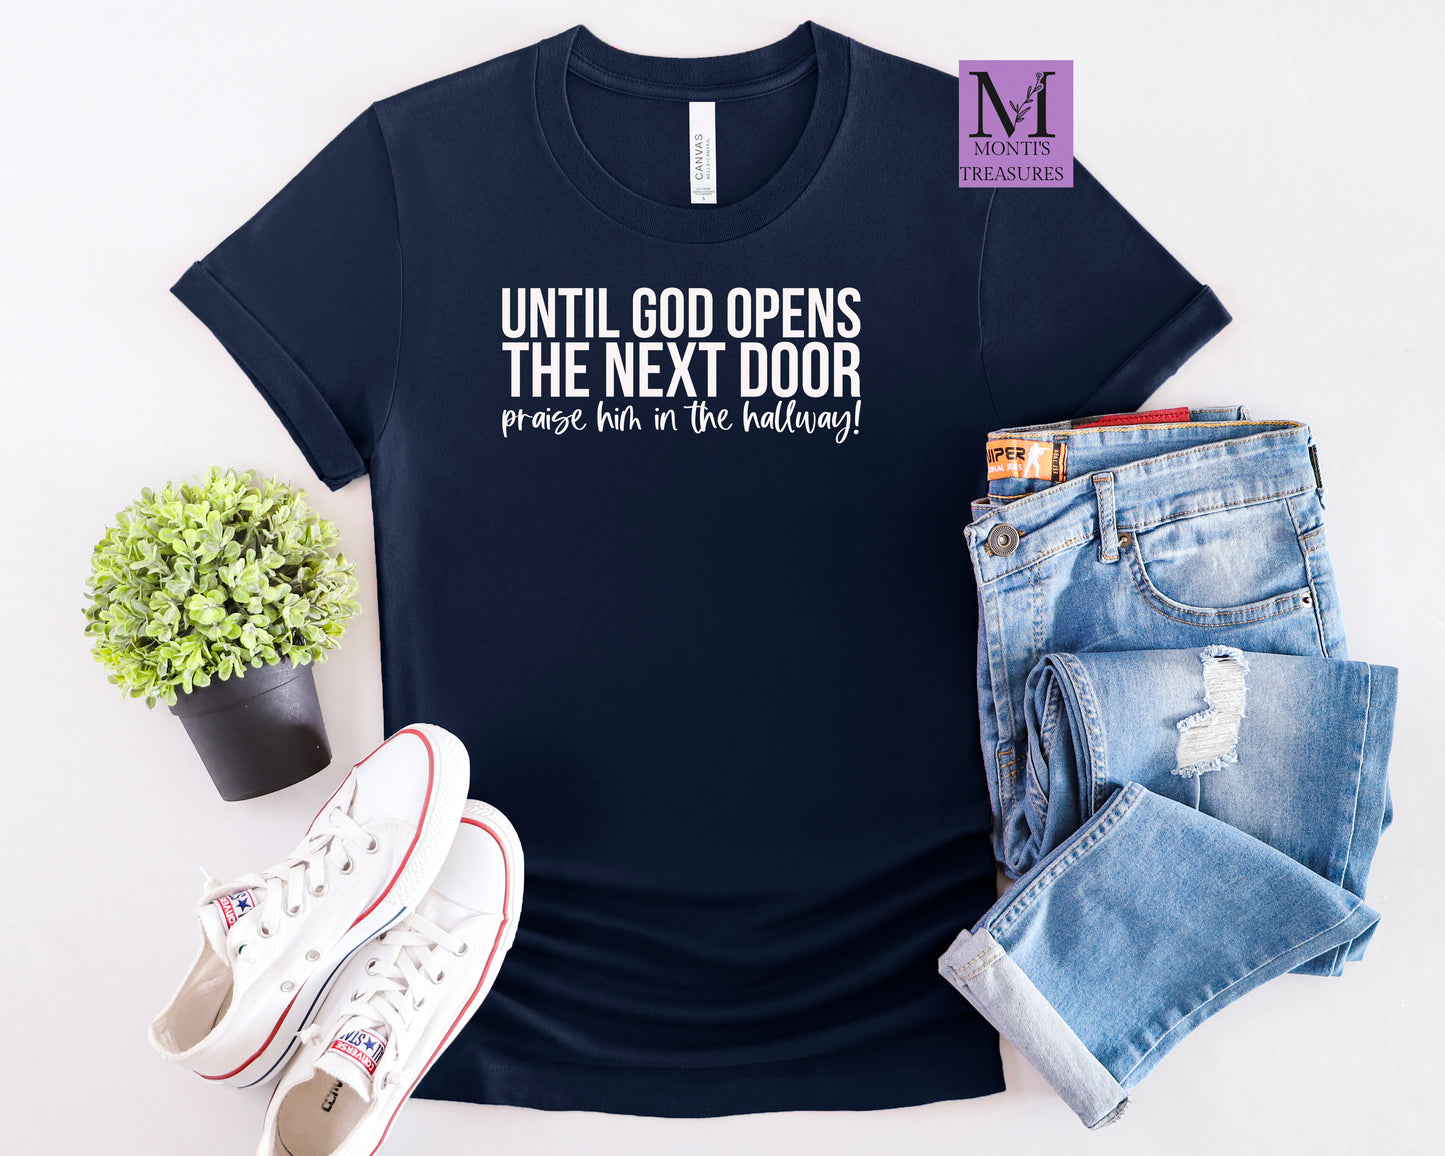 Until God Open The Next Door Praise Him In The Hallway